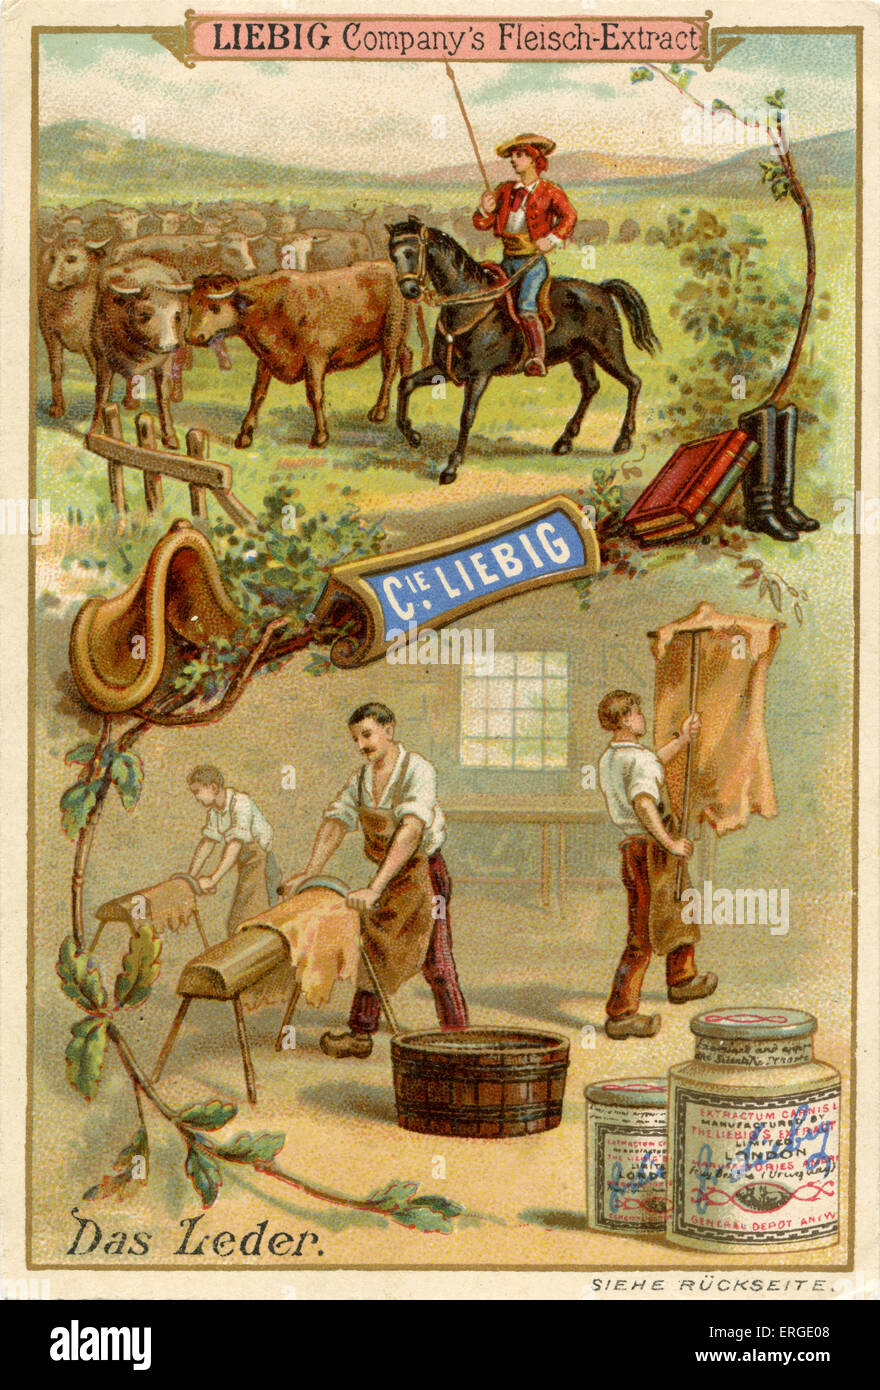 Pelle ('Dcome Leder') - Società di Liebig carte collezionabili, risorse naturali serie. Pubblicato nel 1892. Foto Stock